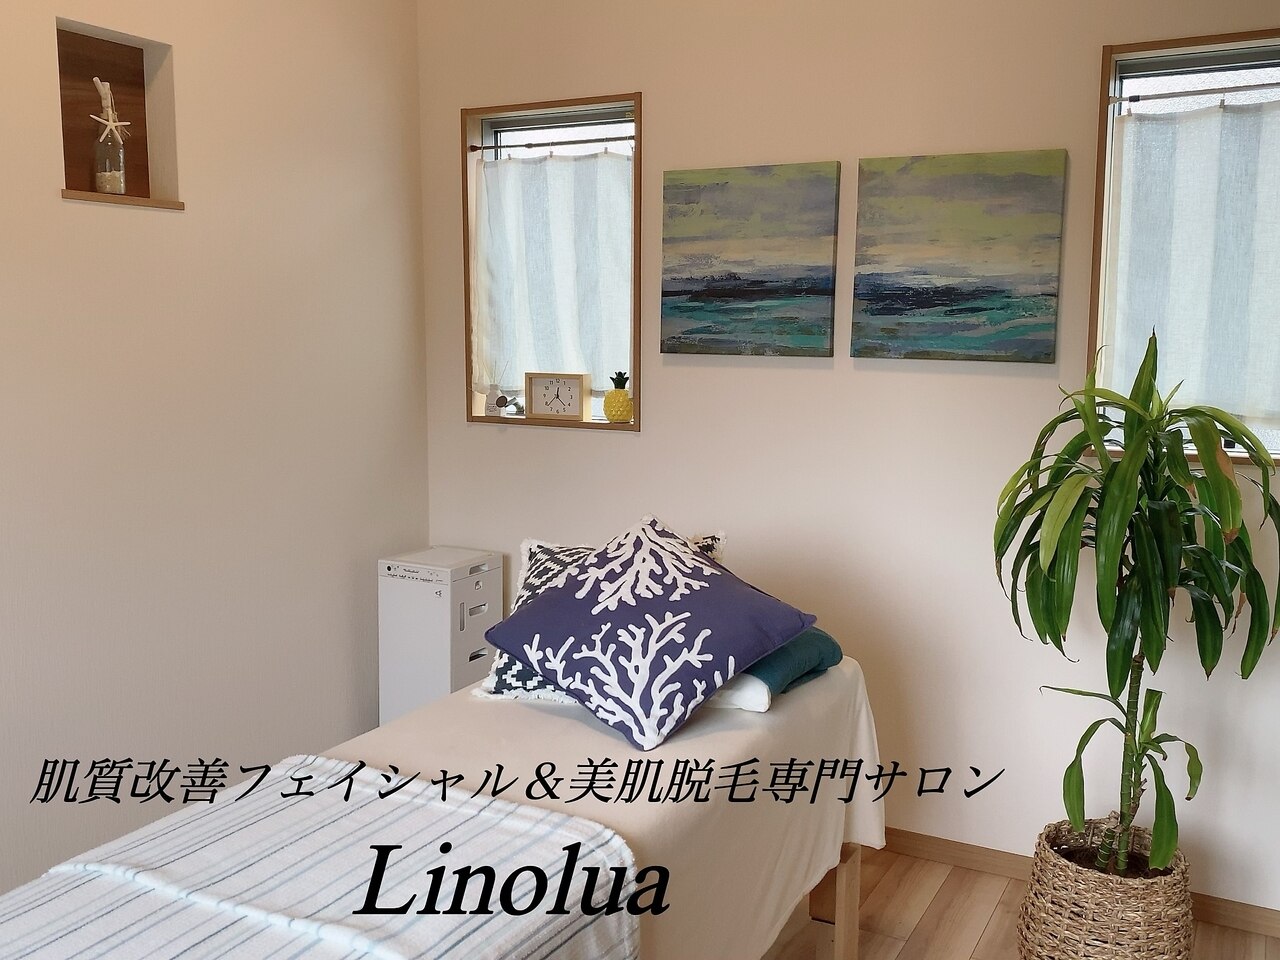 リノルーア(Linolua)の紹介画像